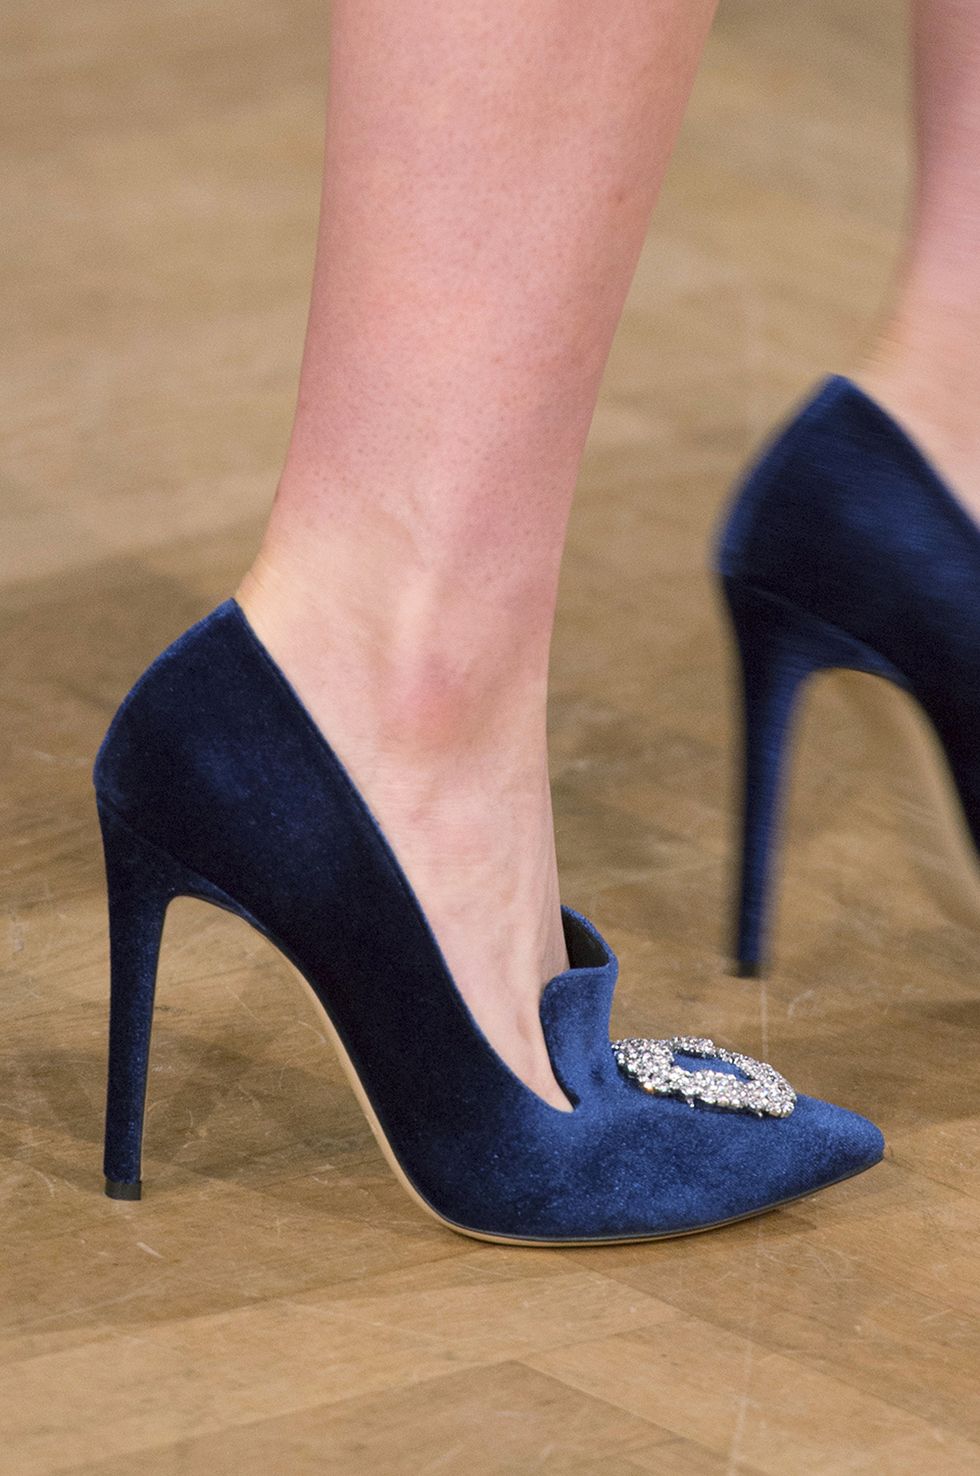 Footwear, High heels, Cobalt blue, Blue, Shoe, Leg, Court shoe, Electric blue, Basic pump, Human leg, 